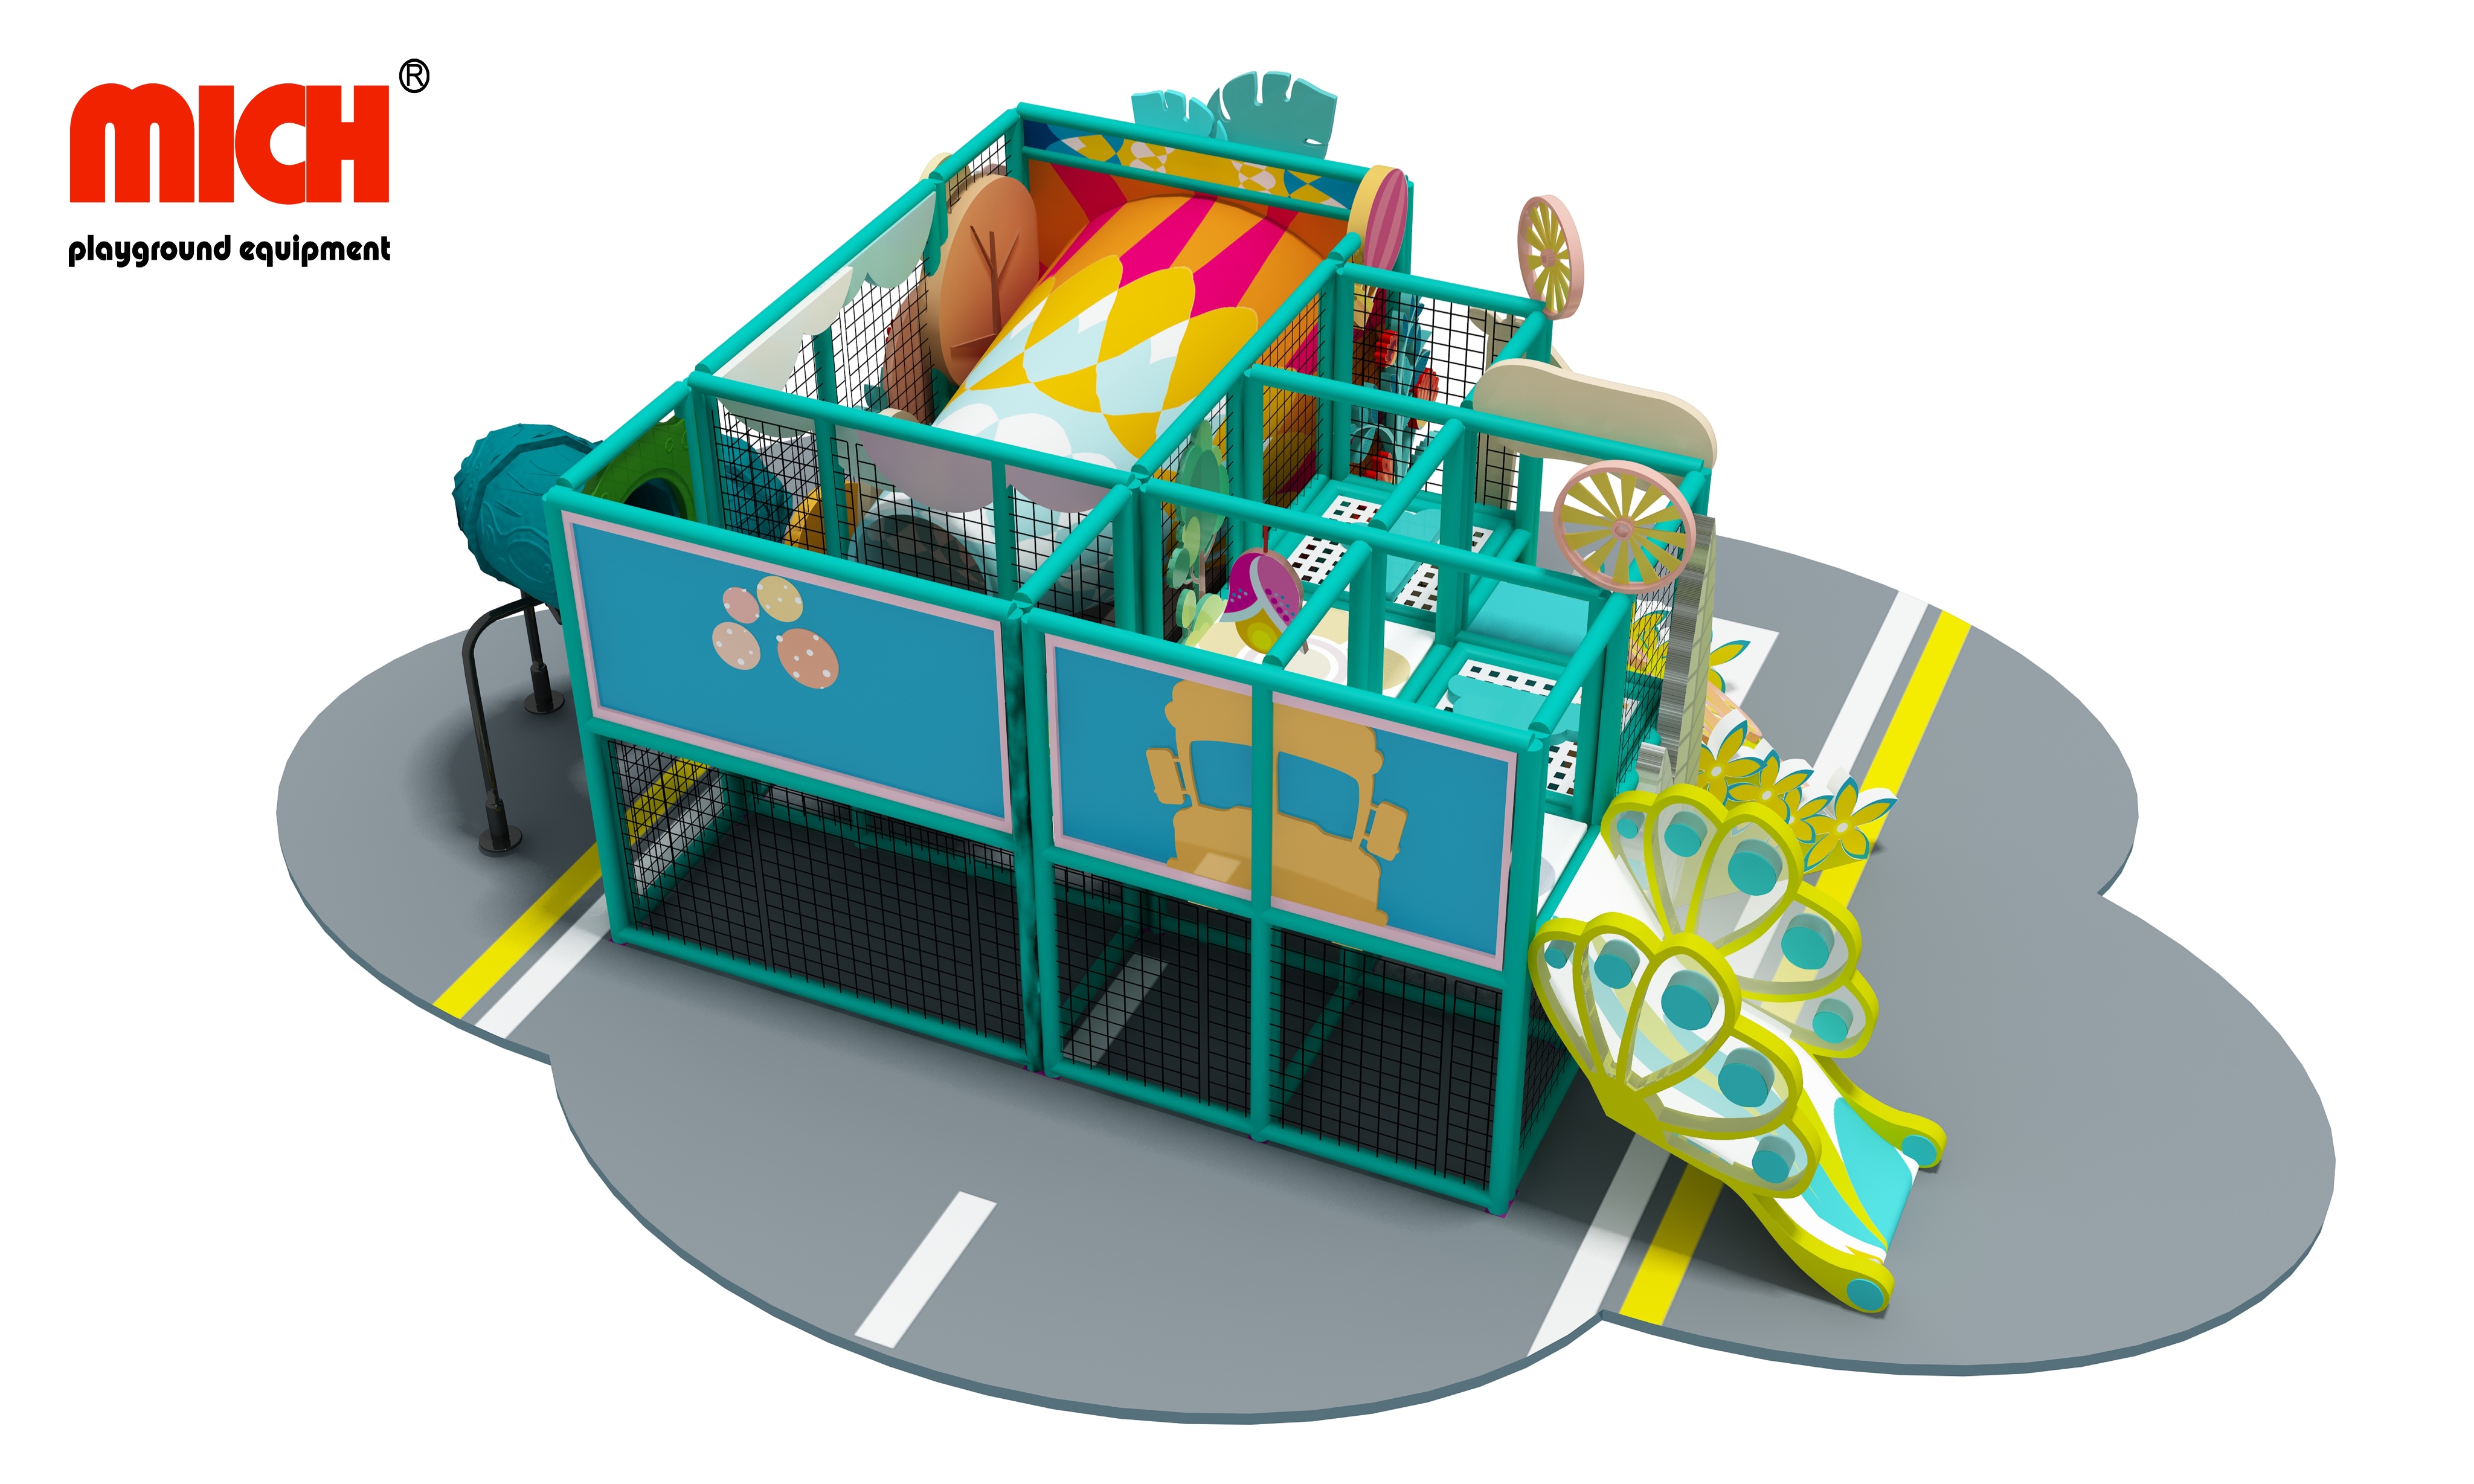 Жаңа дизайн Құбырлар слайдымен кішкентай түрлі-түсті балалар паркі